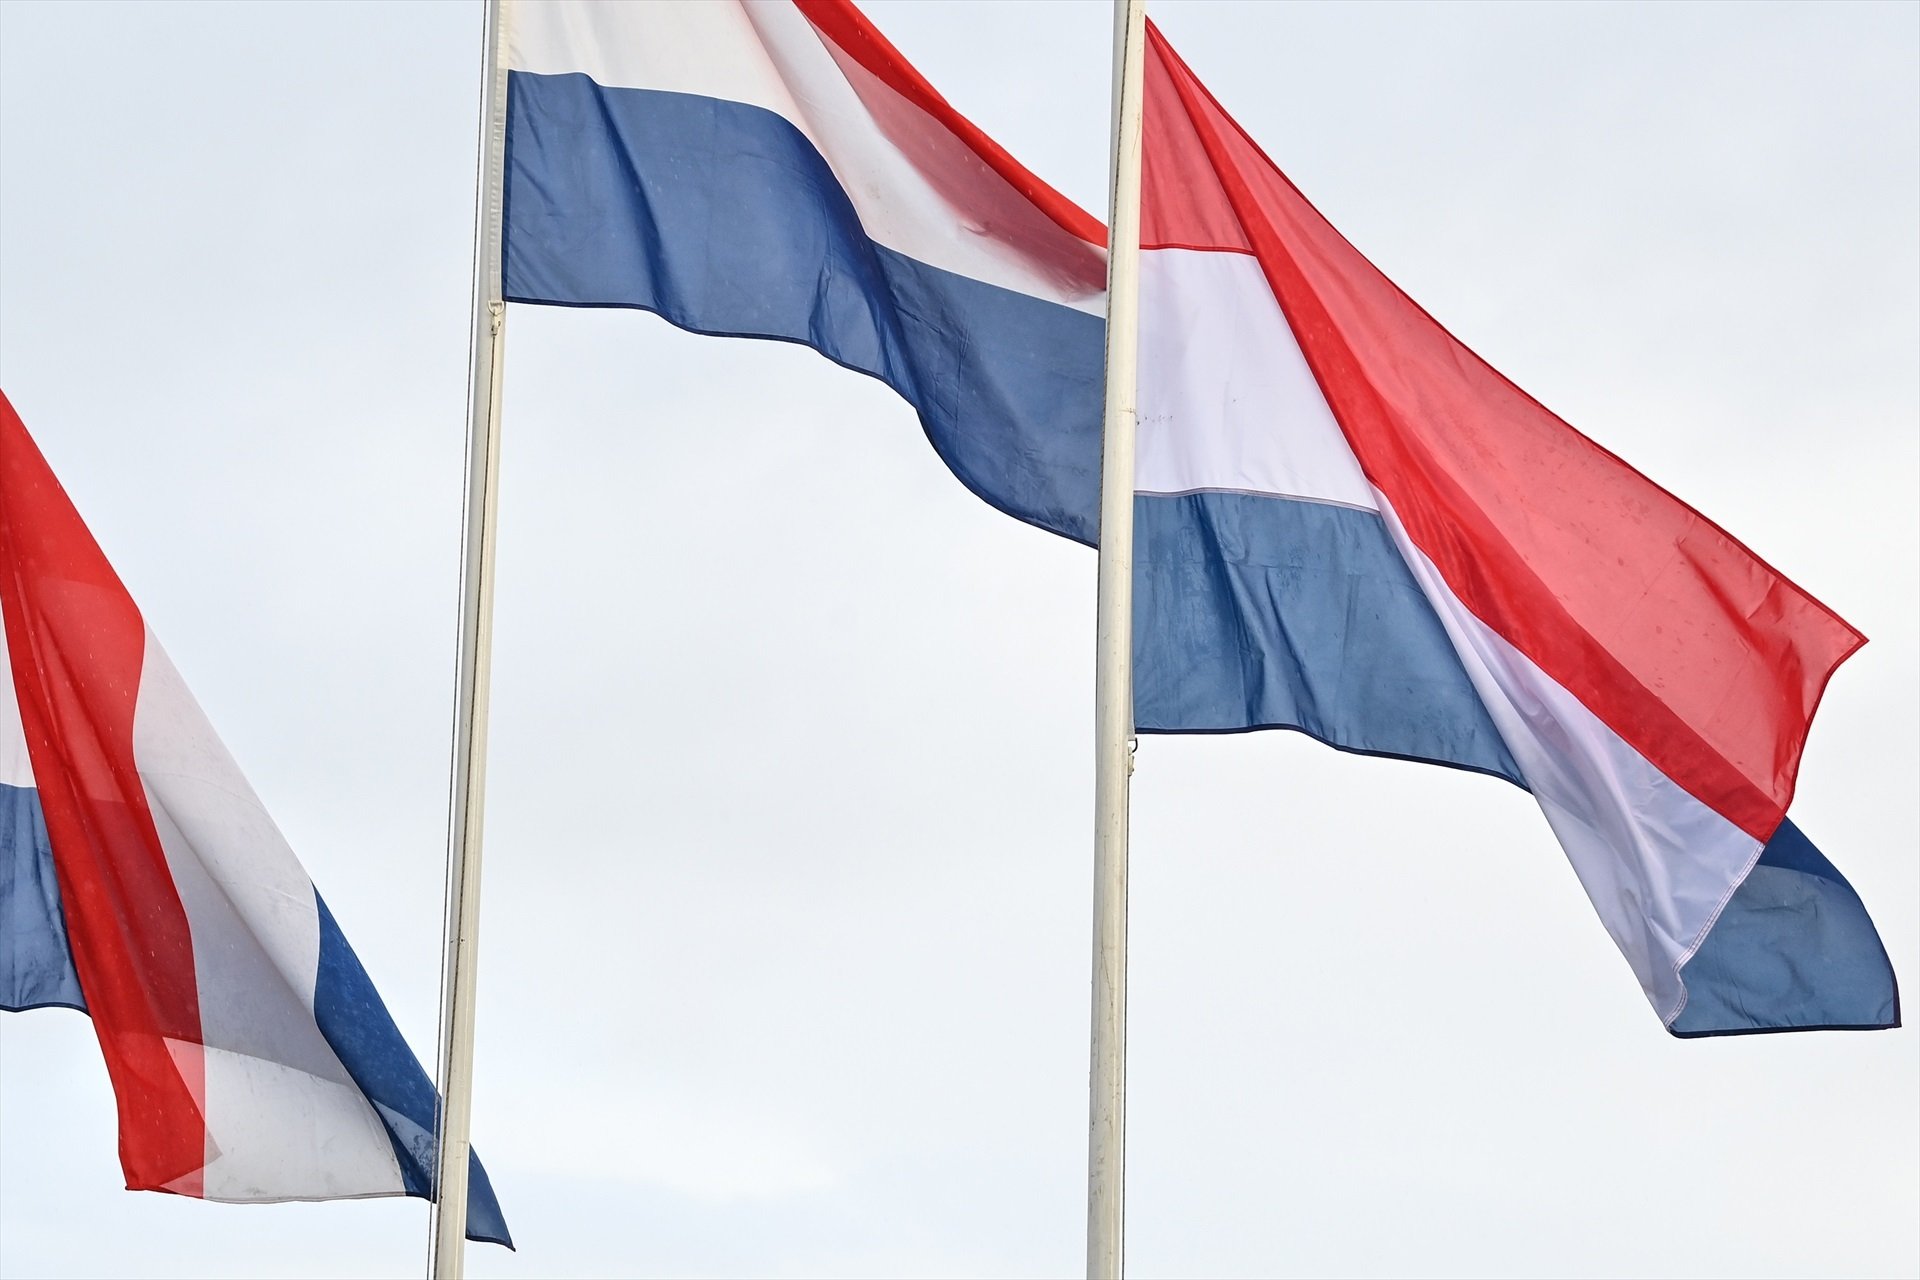 El gobierno de Países Bajos "tomará nota" de la decisión de Ferrovial, pero no se pronunciará